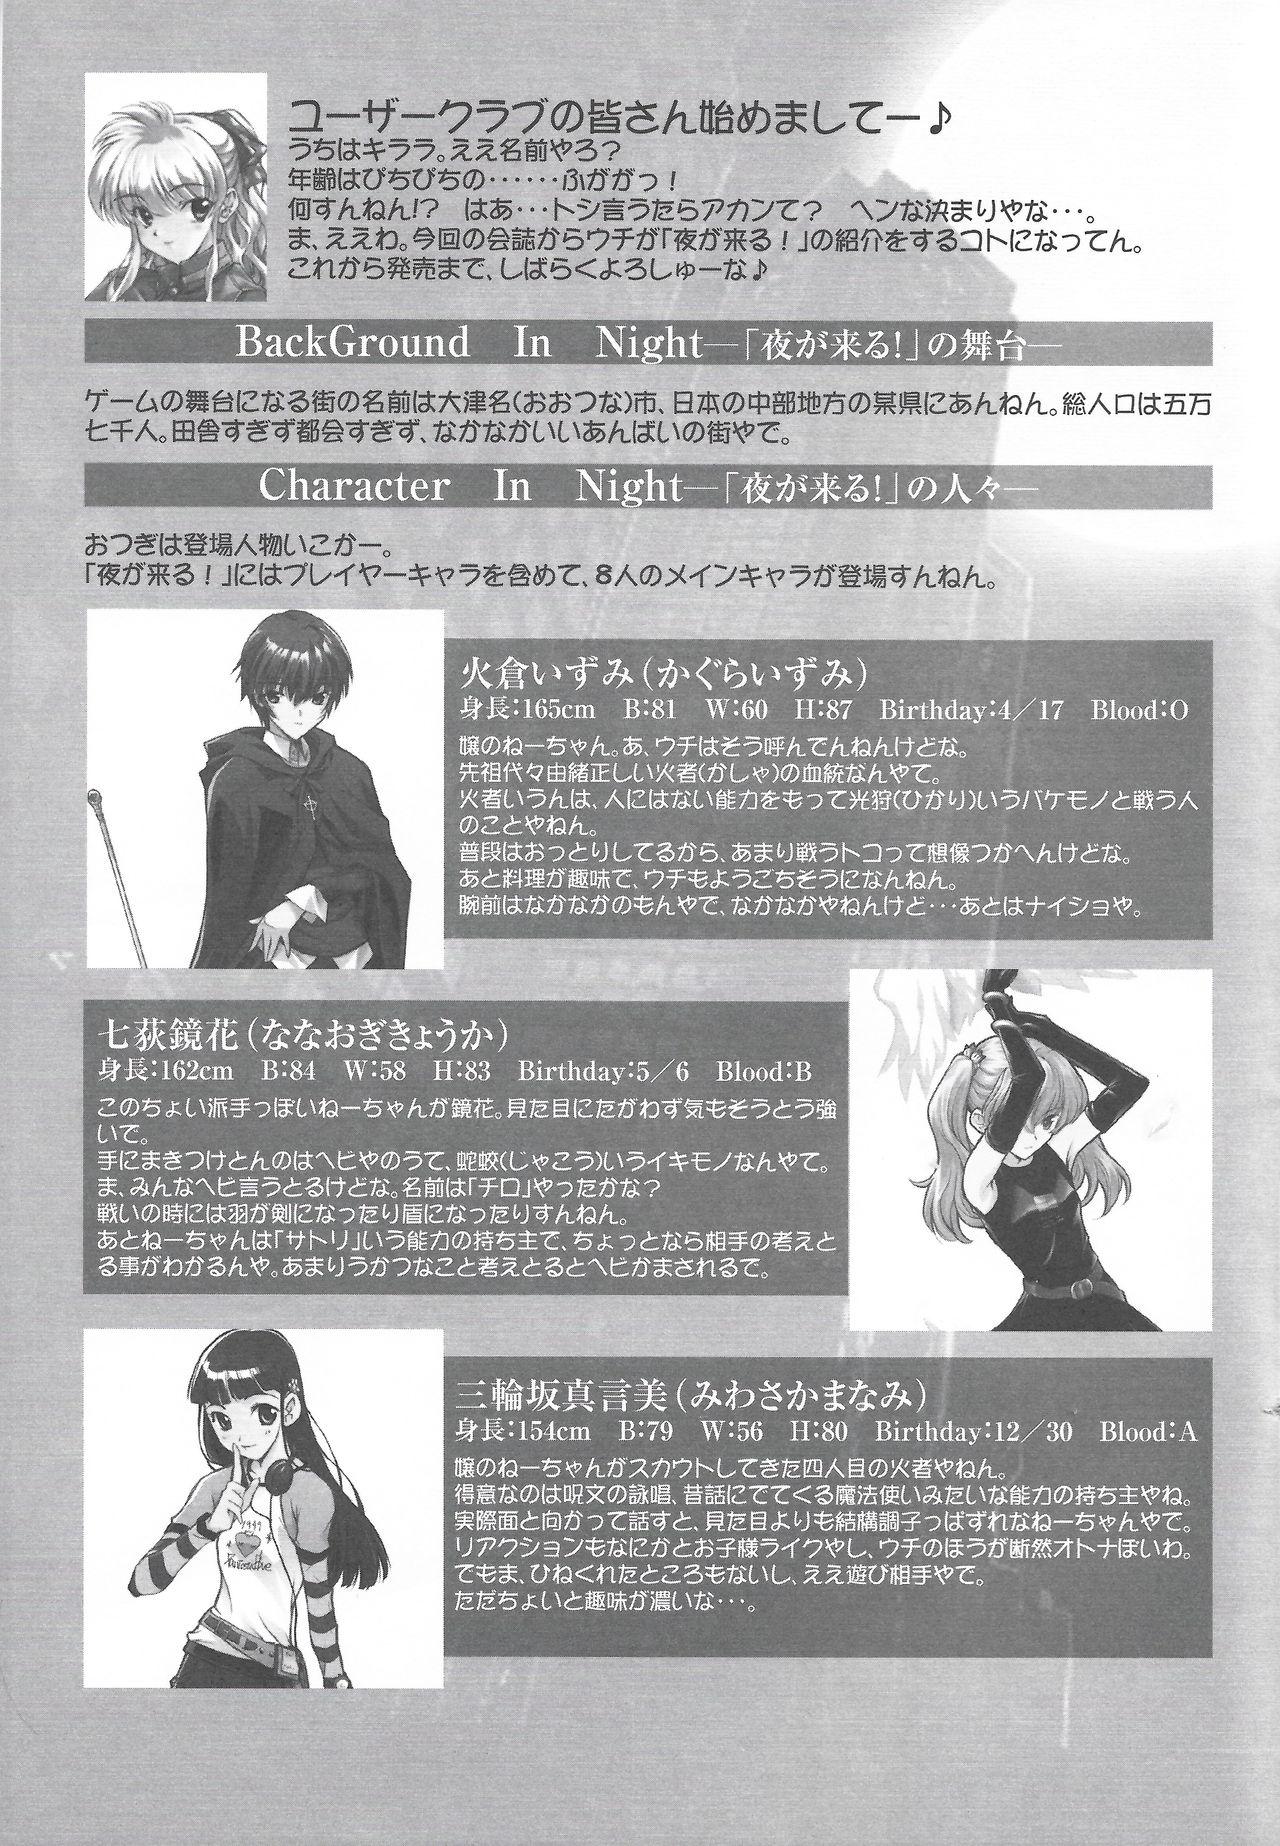 Cheating Arisu no Denchi Bakudan Vol. 14 Tanga - Page 2